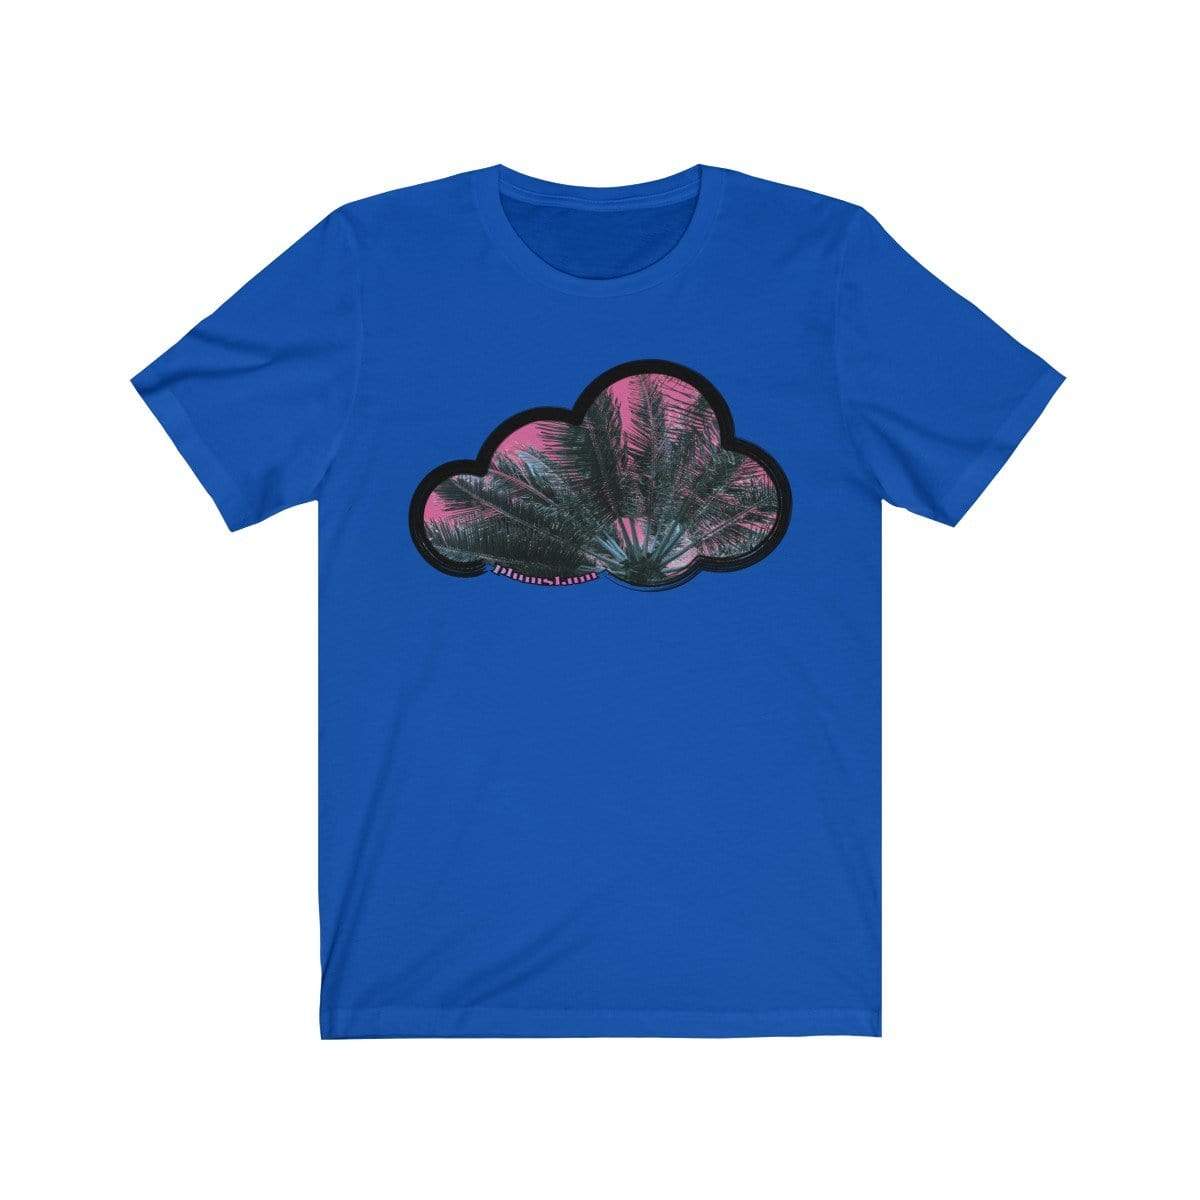 Printify T-Shirt True Royal / M Palm Sky Art Clouds T-Shirt